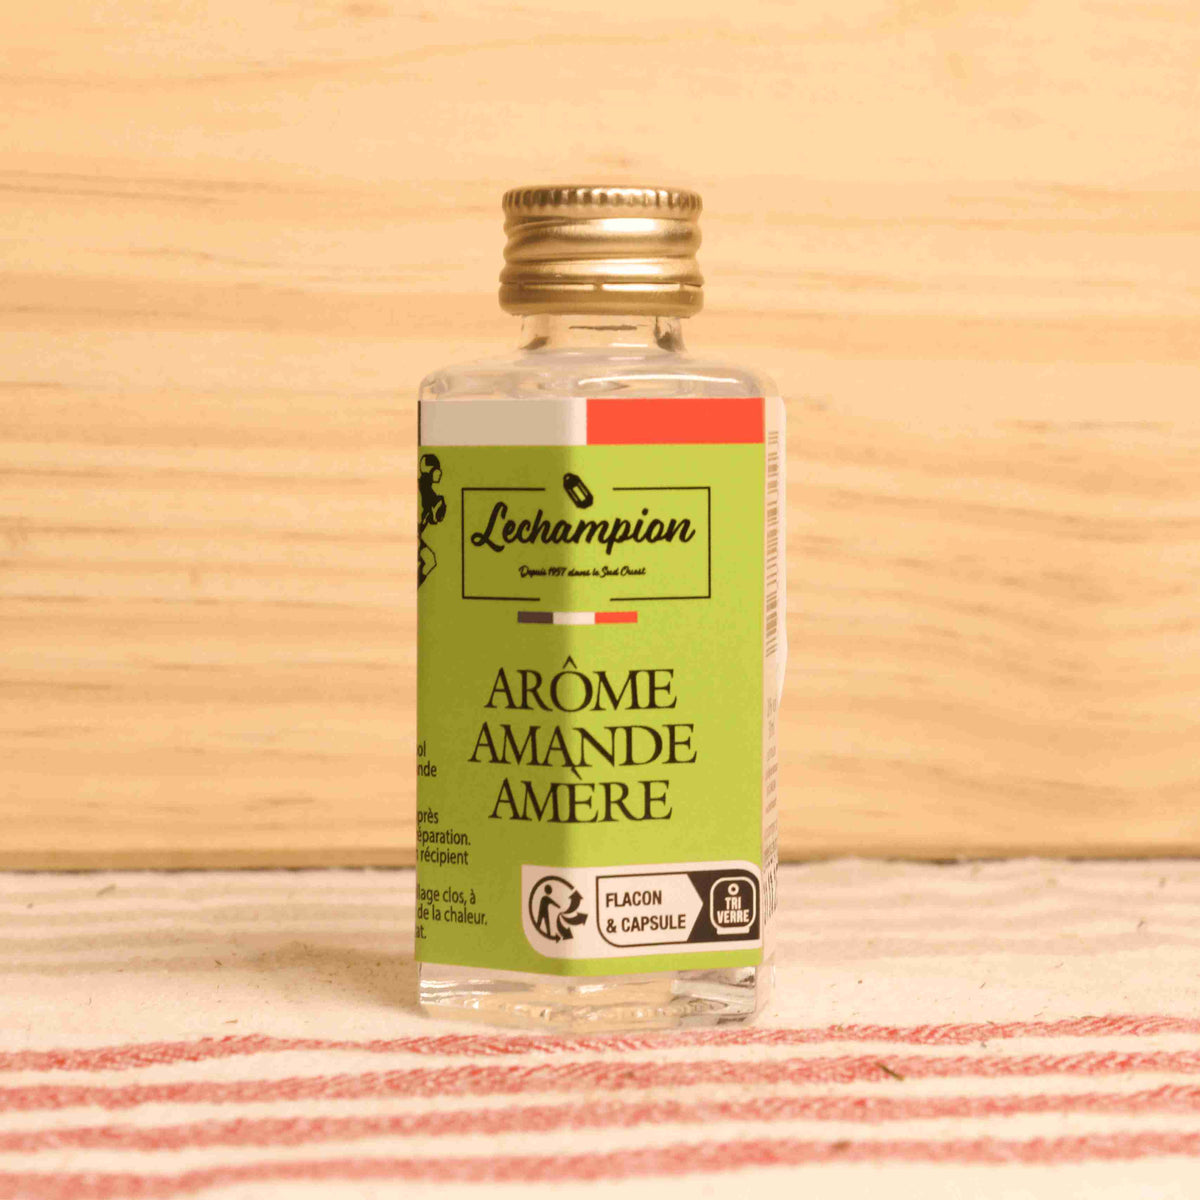 Arôme amande amère - Flacon 20ml